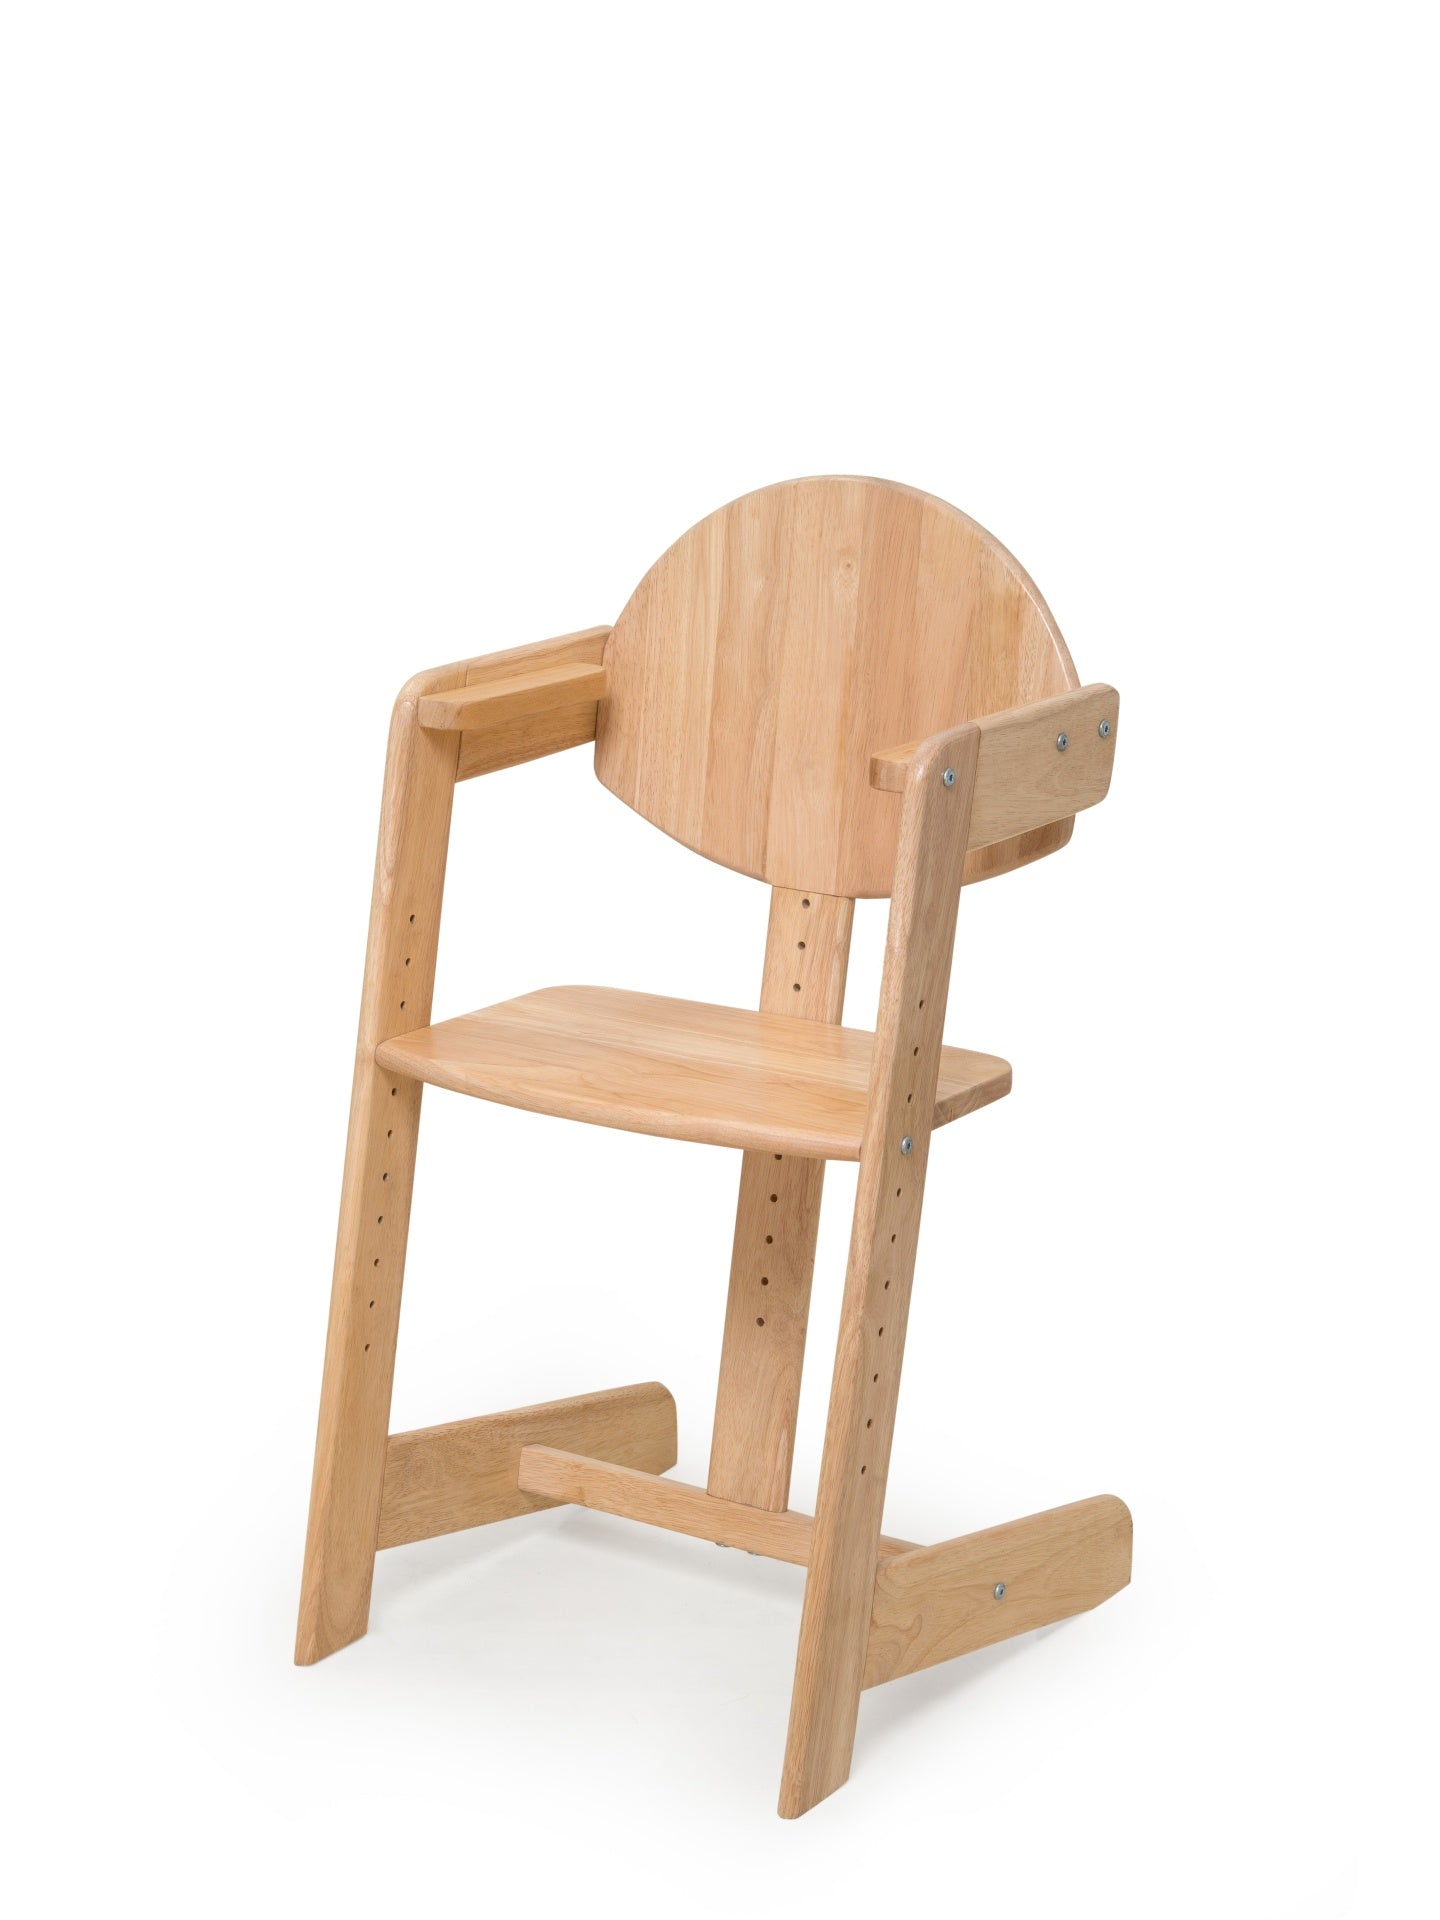 Filou - High chair